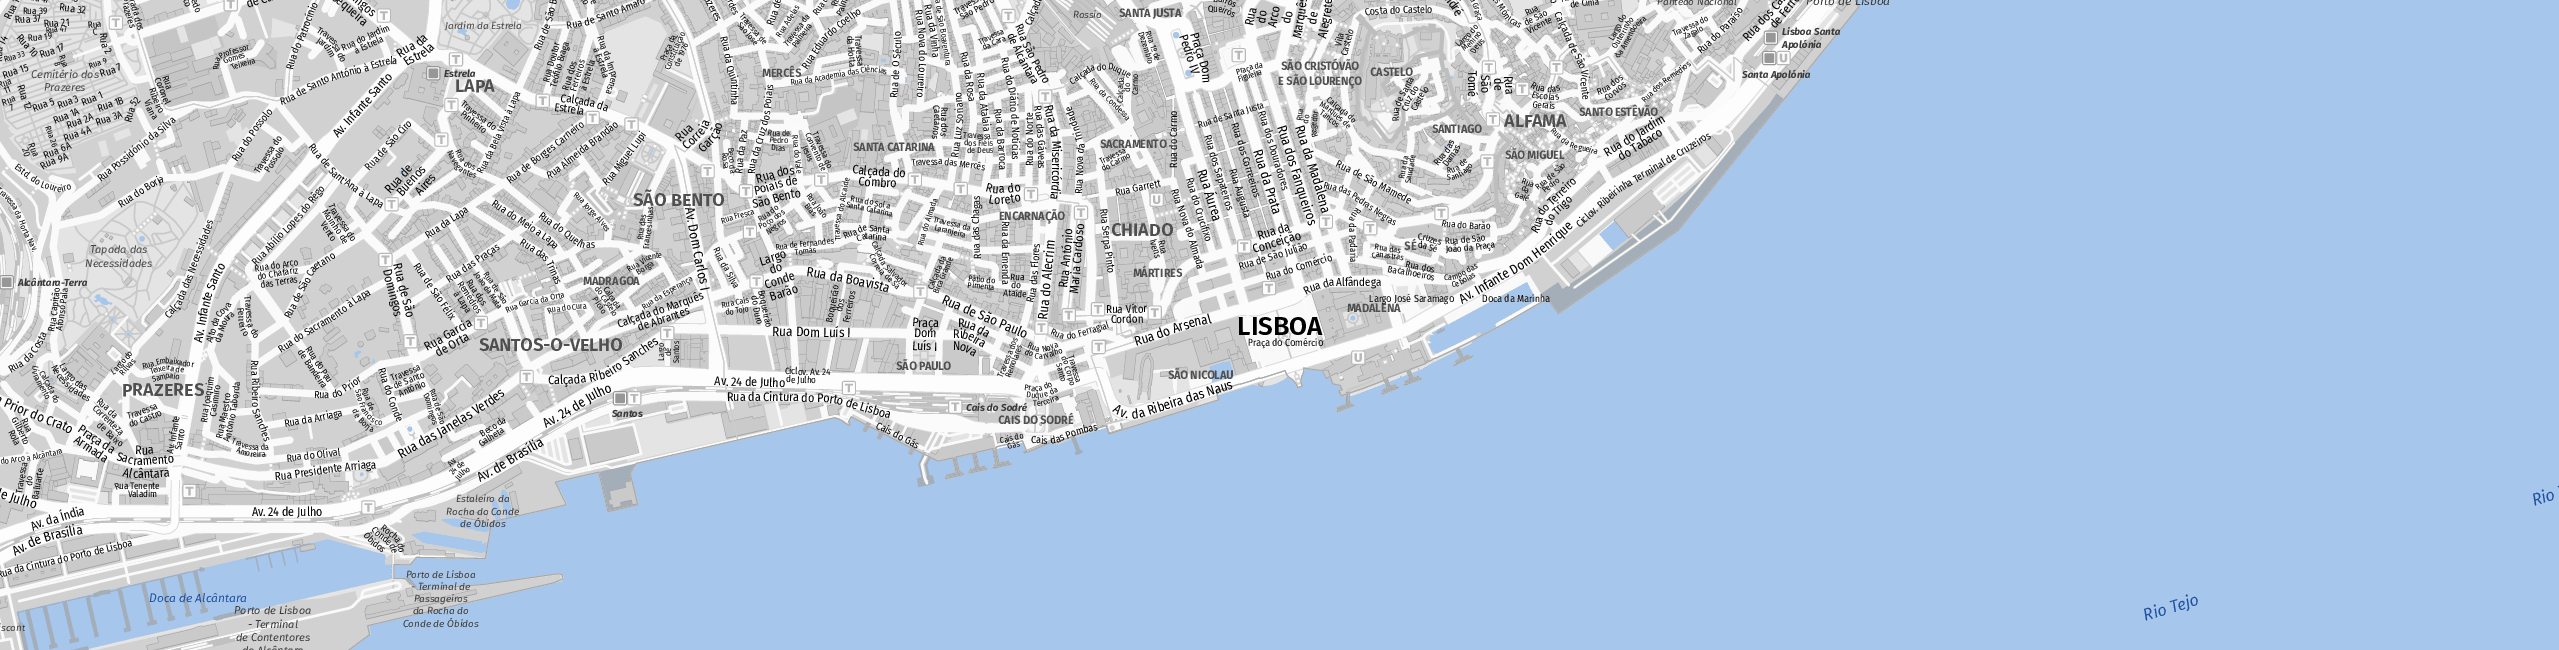 Stadtplan Lissabon zum Downloaden.